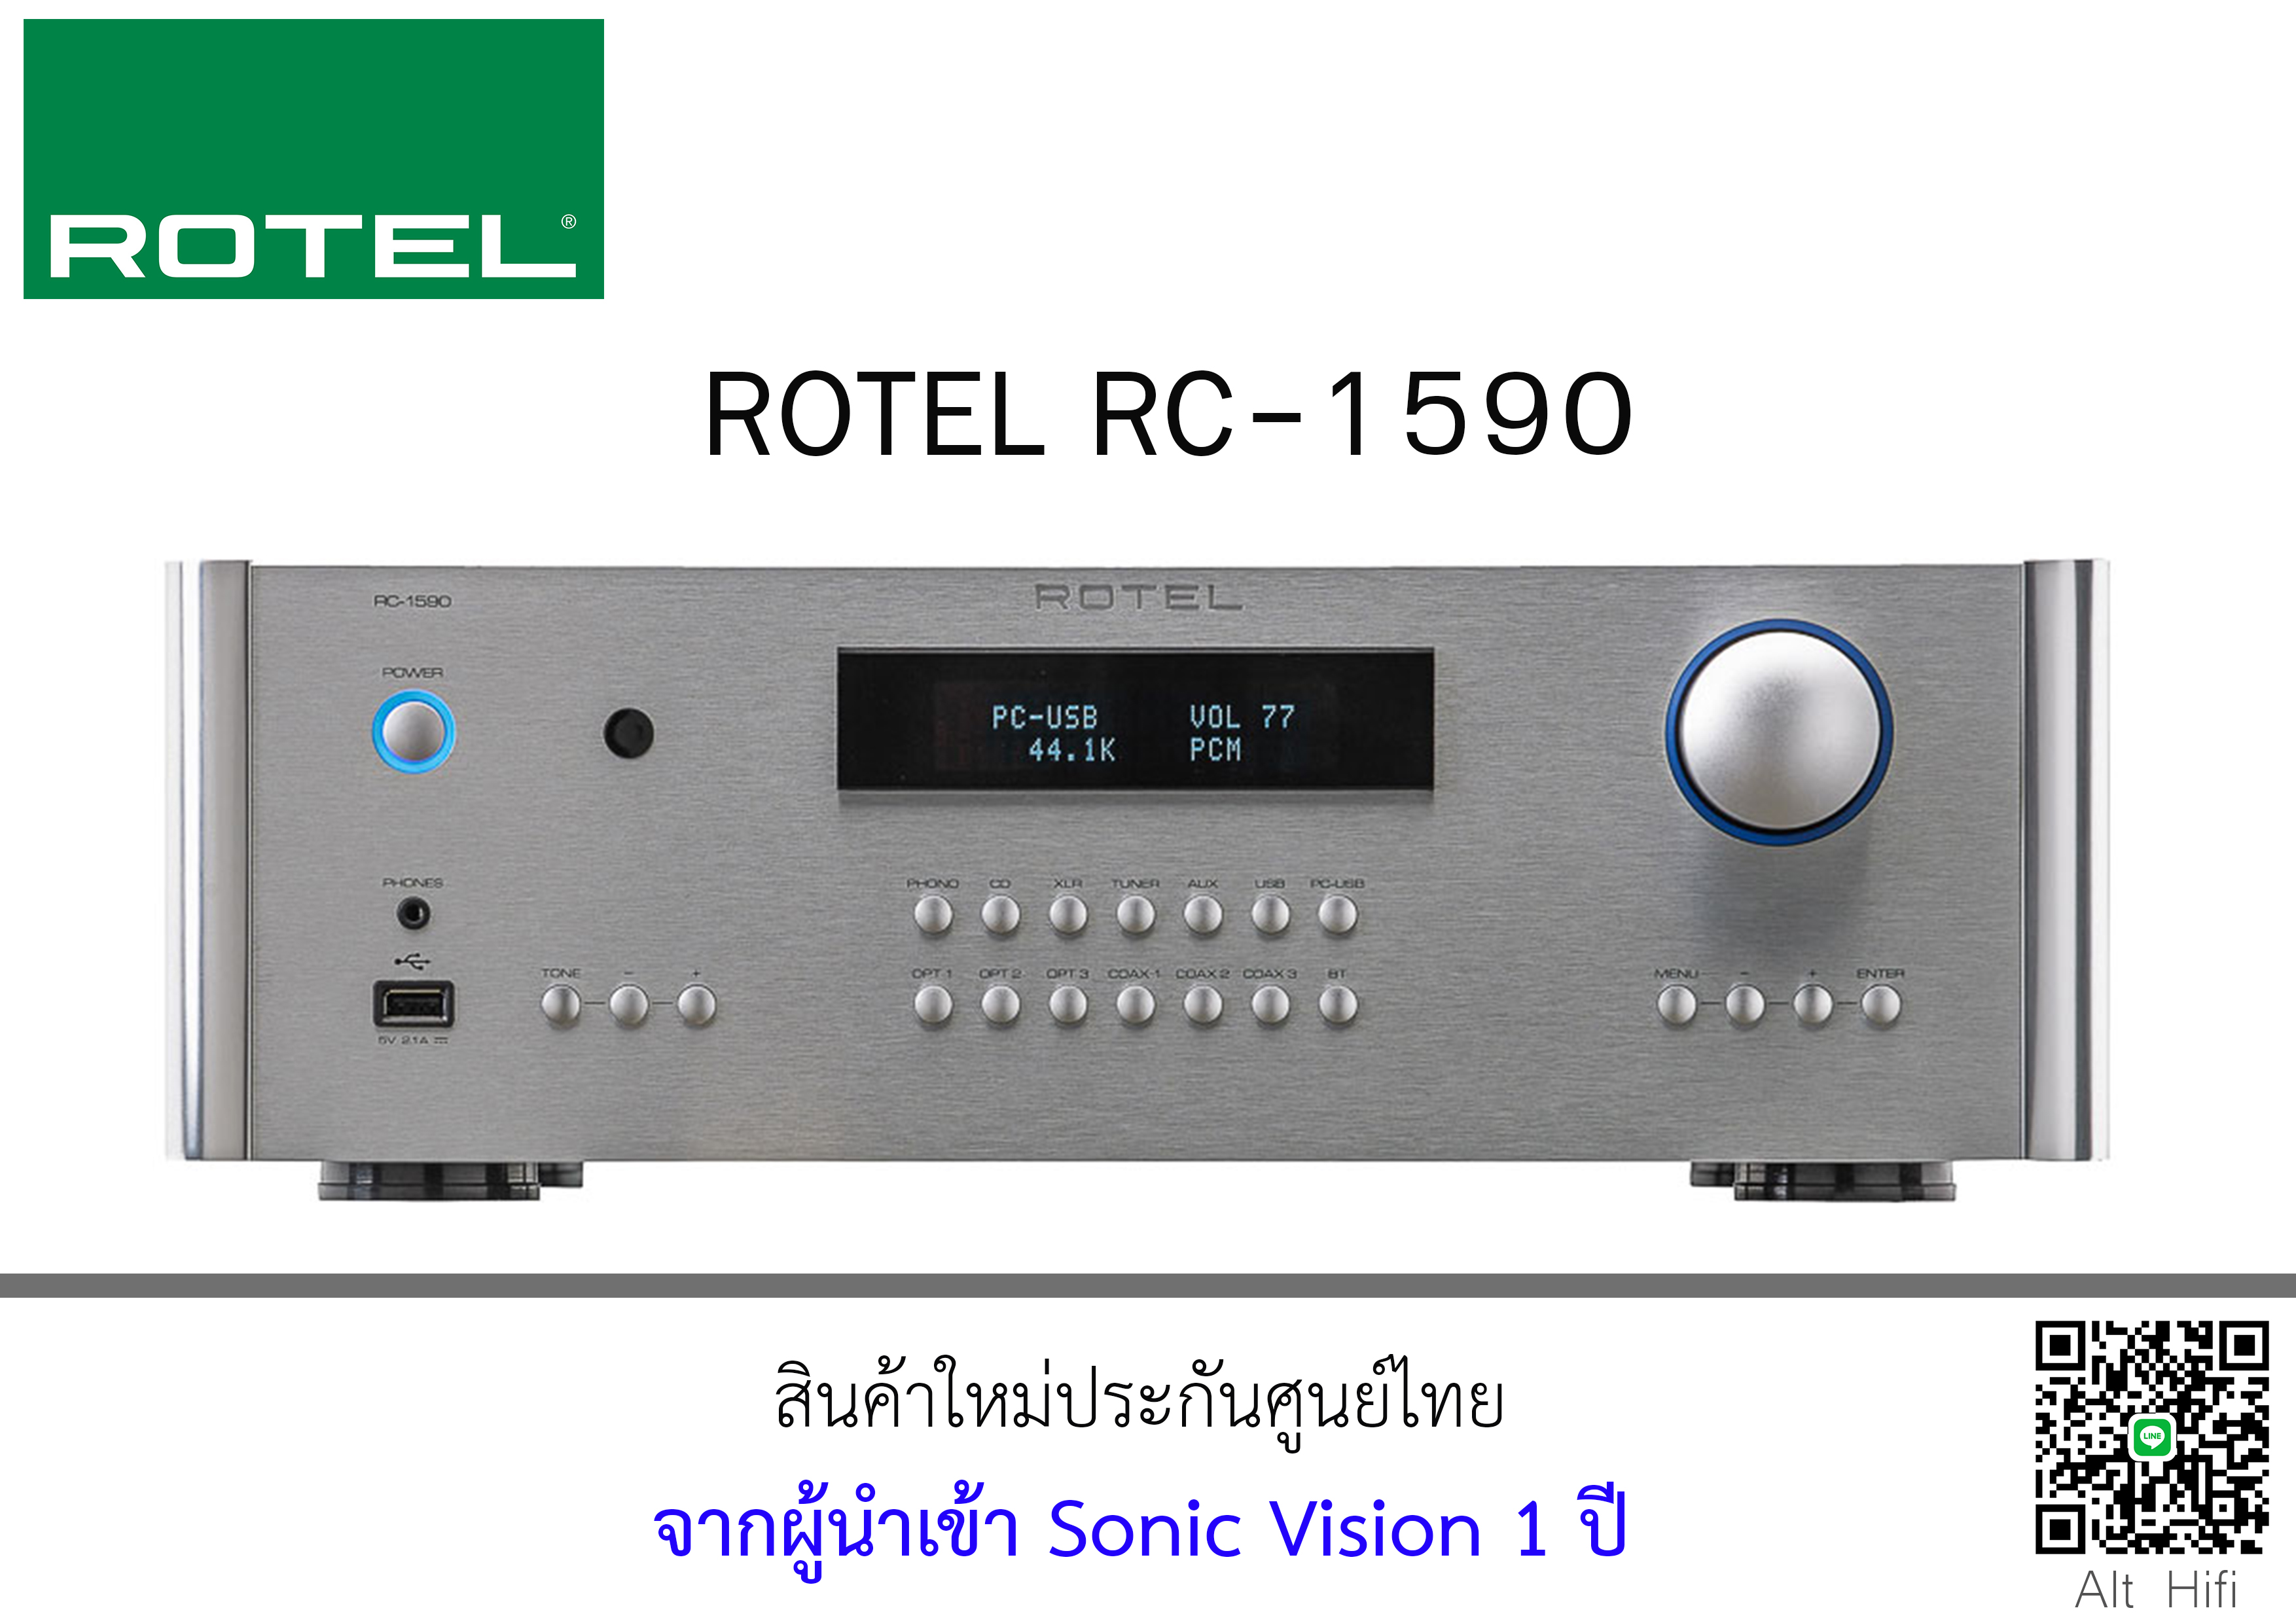 ROTEL RC-1590 Pre-Amplifier